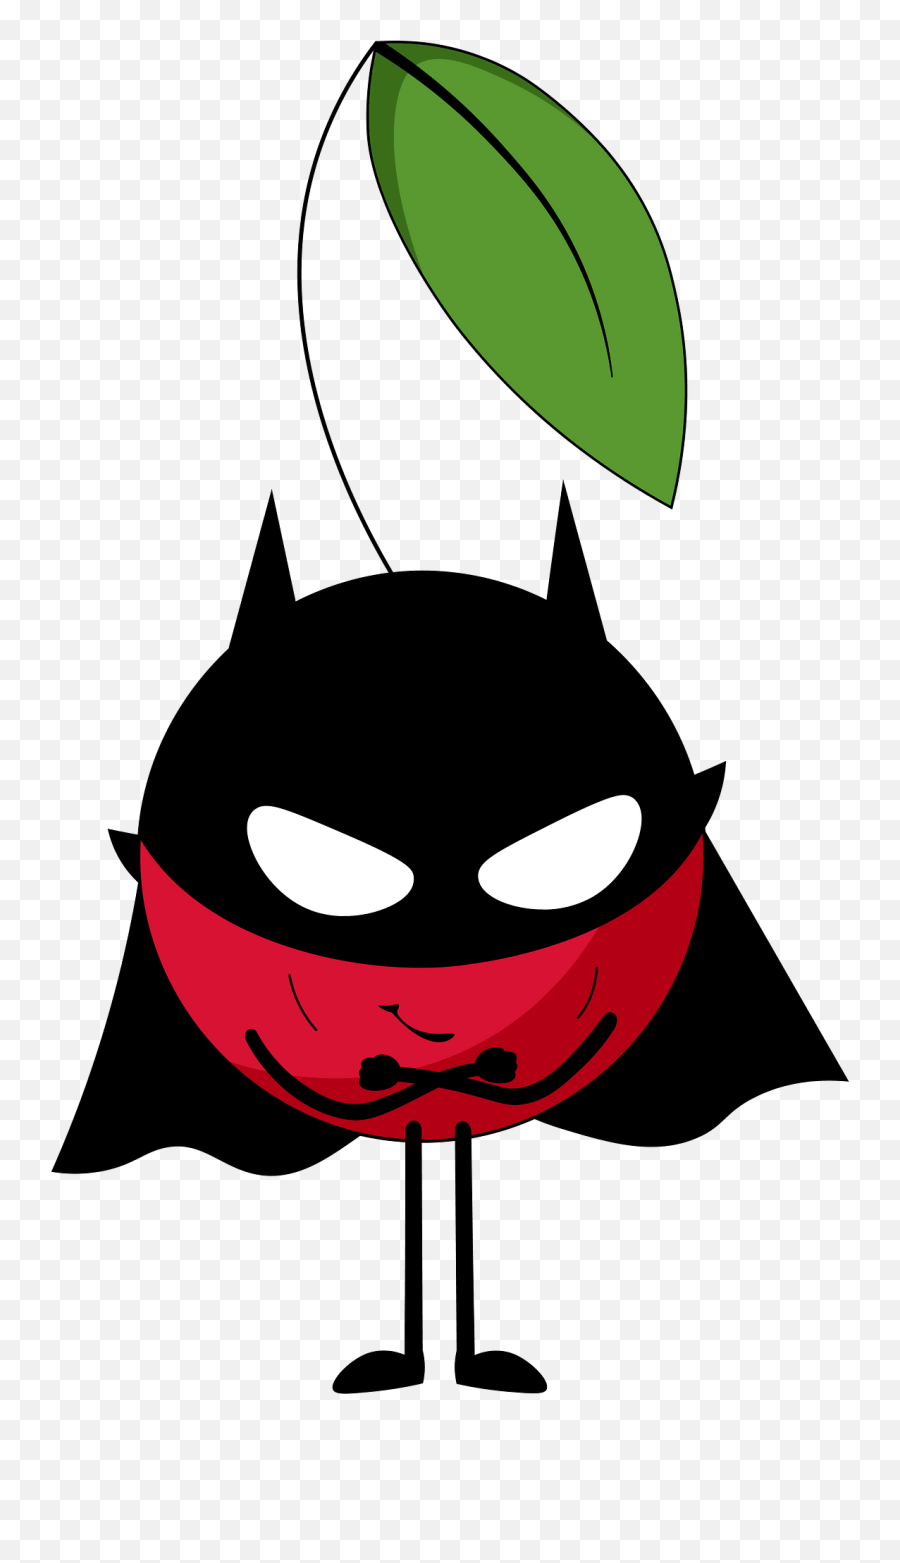 Cherry Batman Clipart Free Download Transparent Png Emoji,Batman Clipart Free